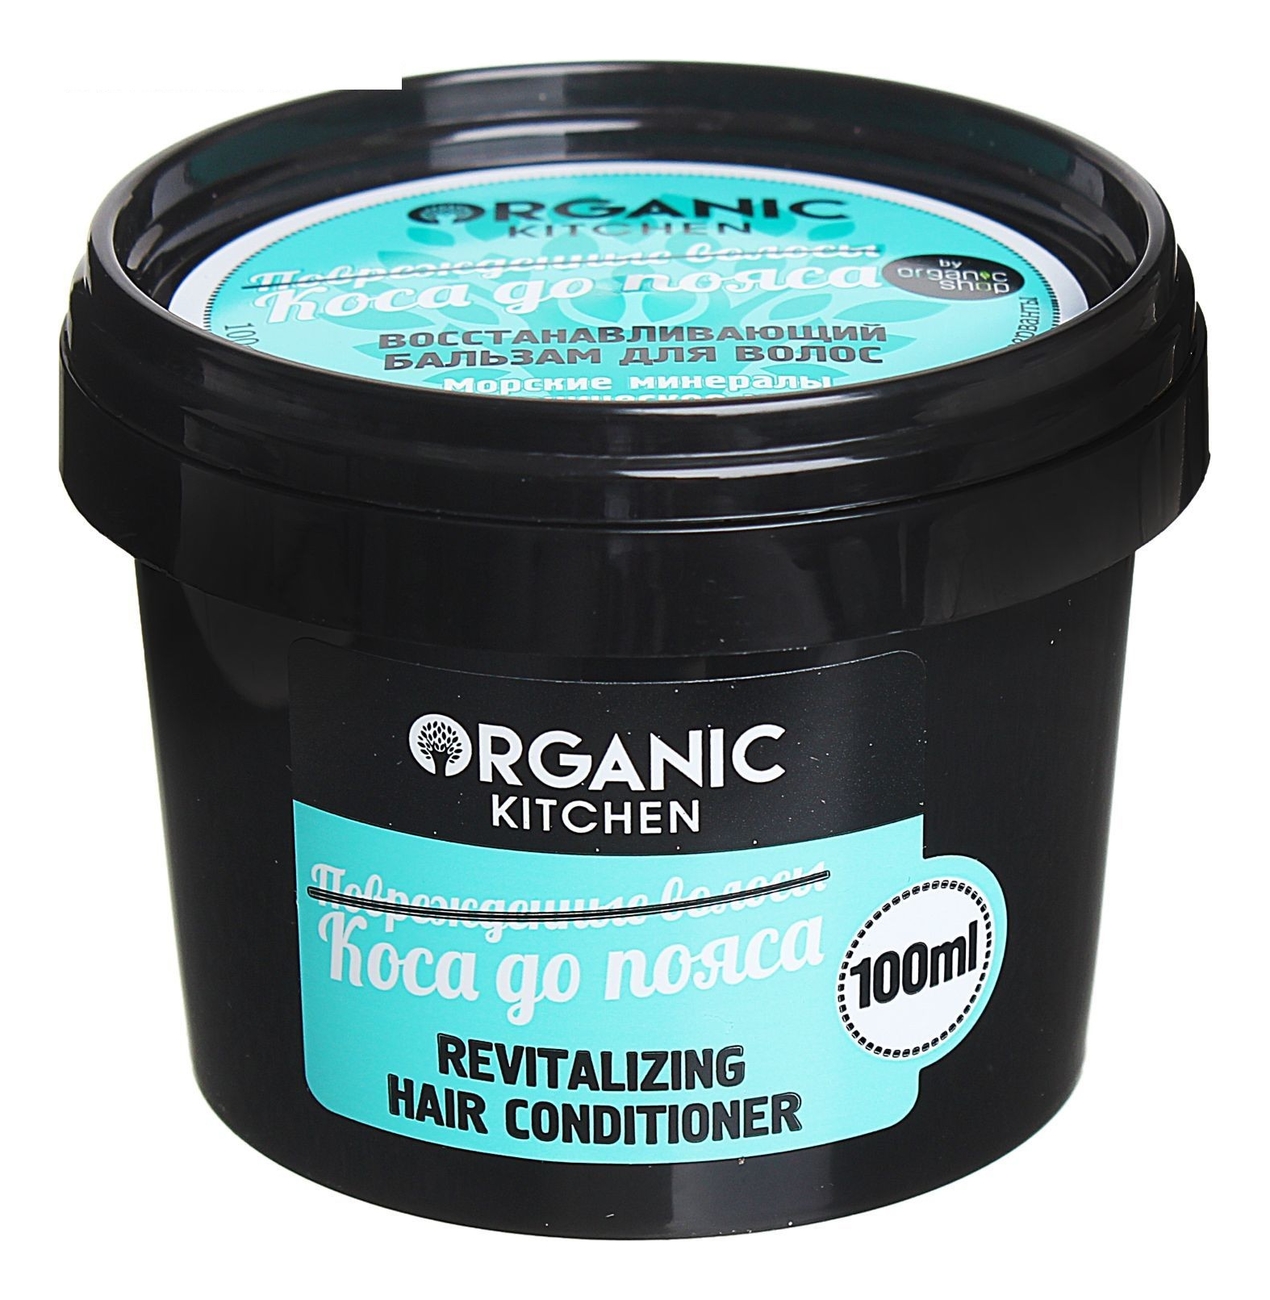 Купить Восстанавливающий бальзам для волос Коса до пояса Organic Kitchen Revitalizing Hair Conditioner 100мл, Organic Shop